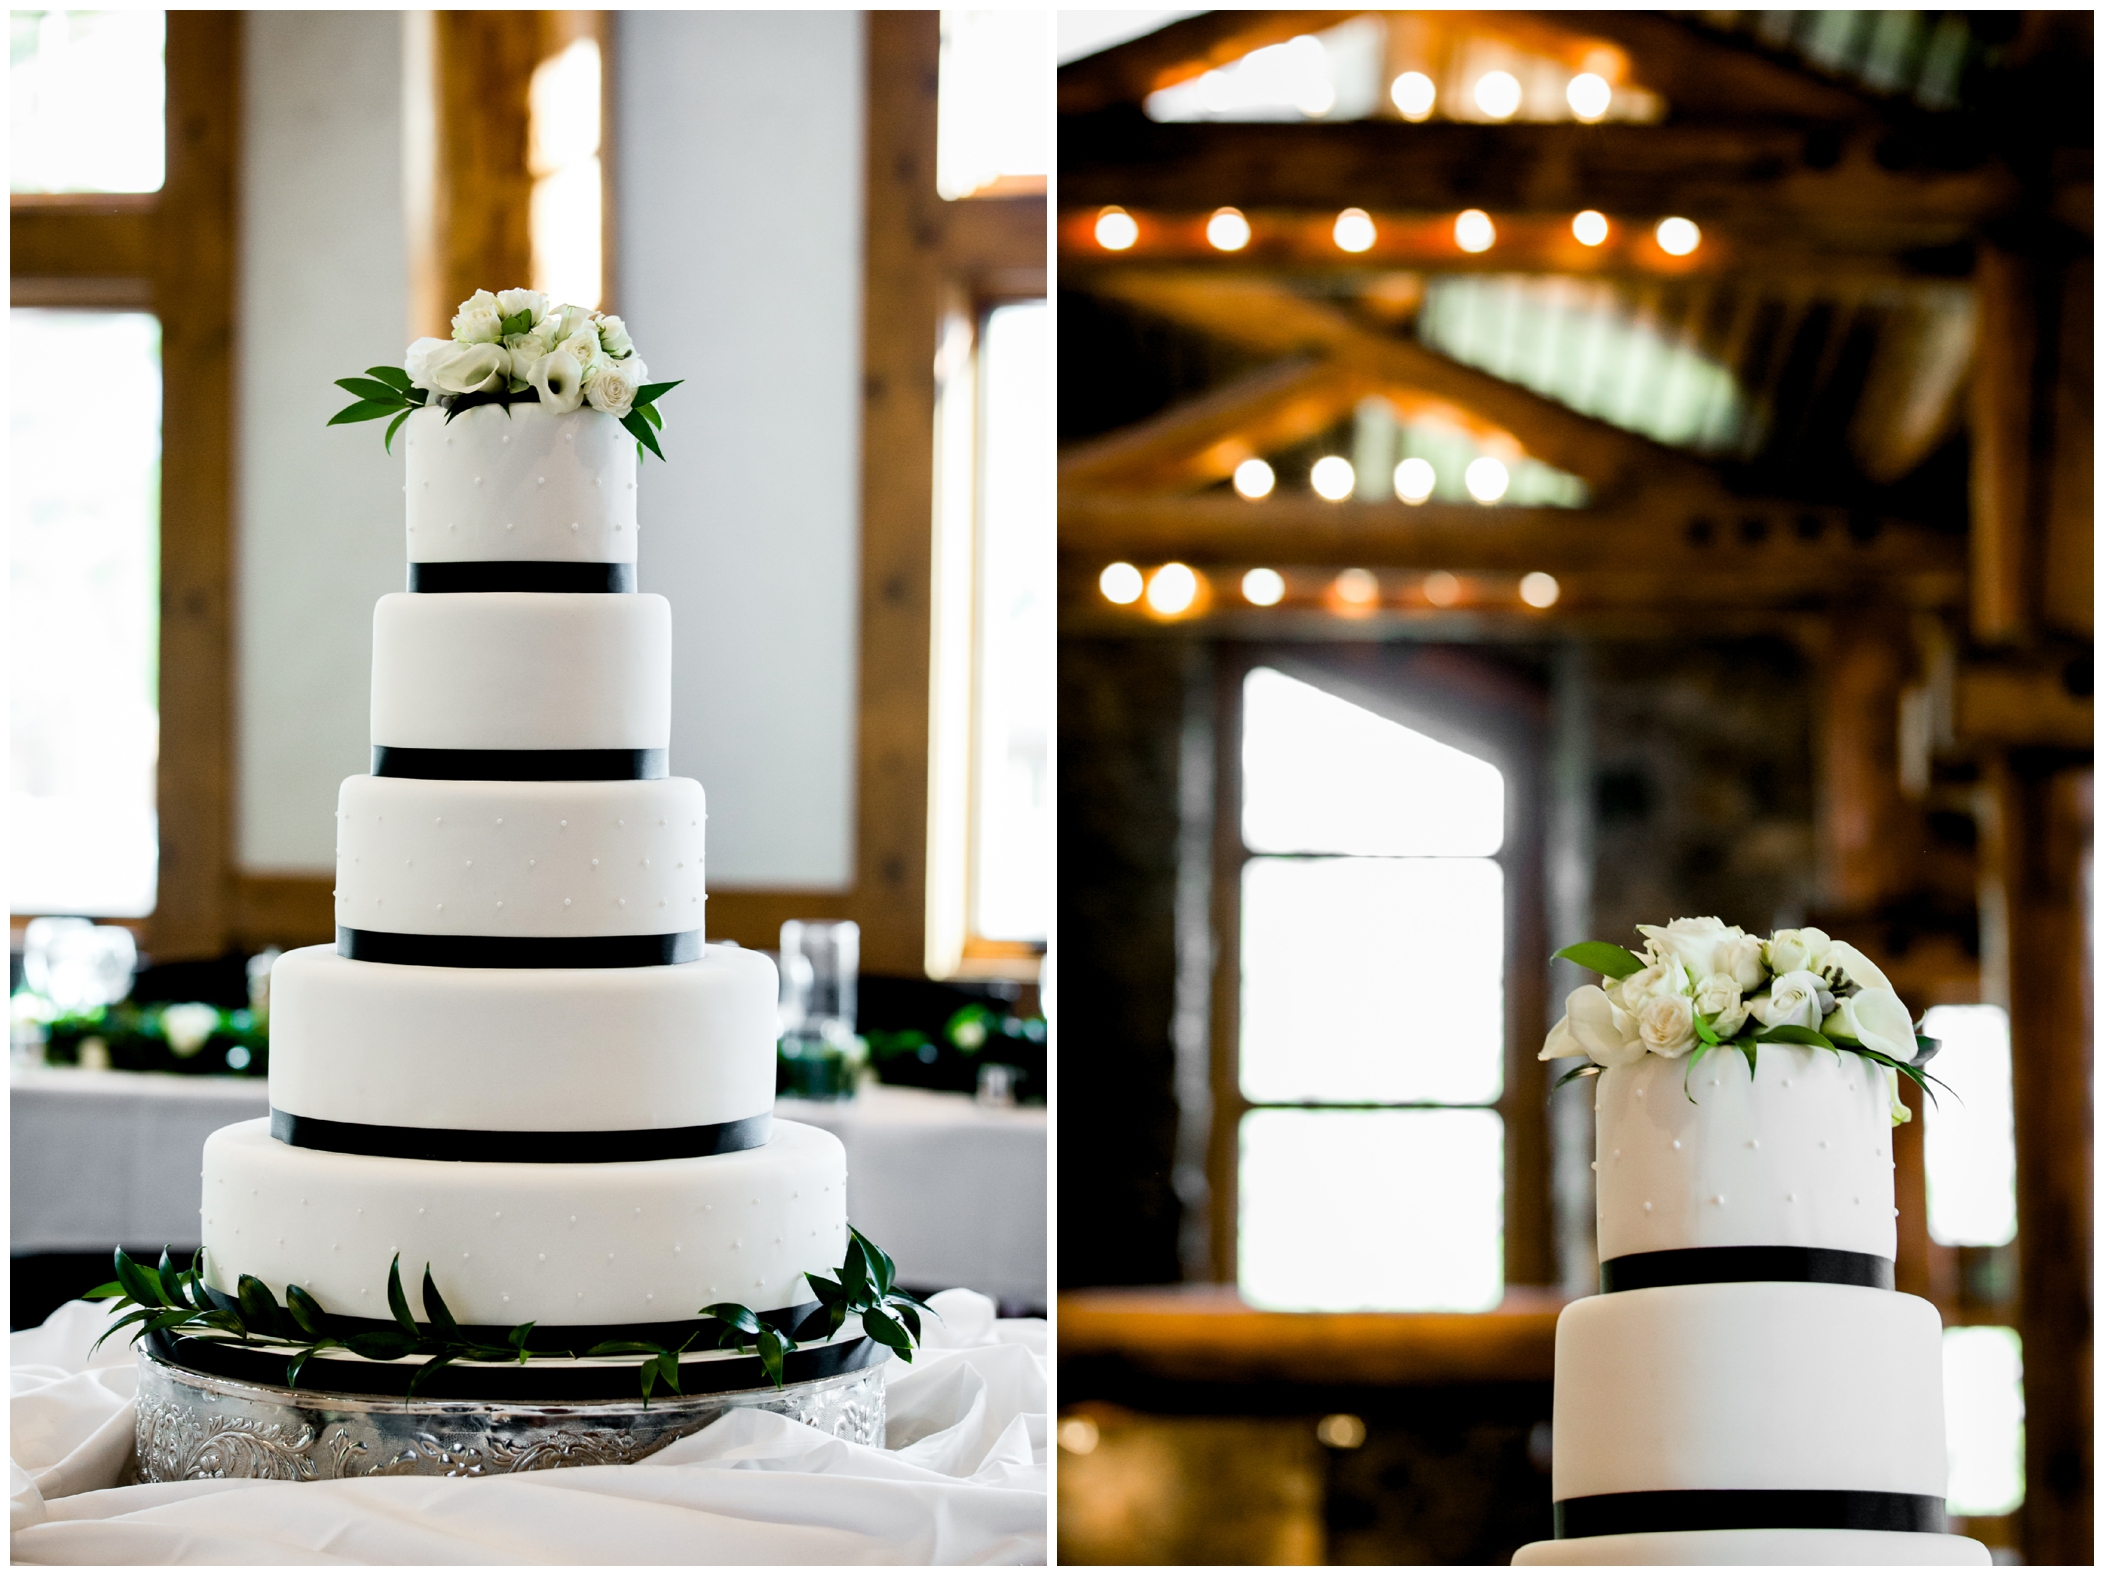 five tier white wedding cake at Colorado black tie wedding in Keystone 